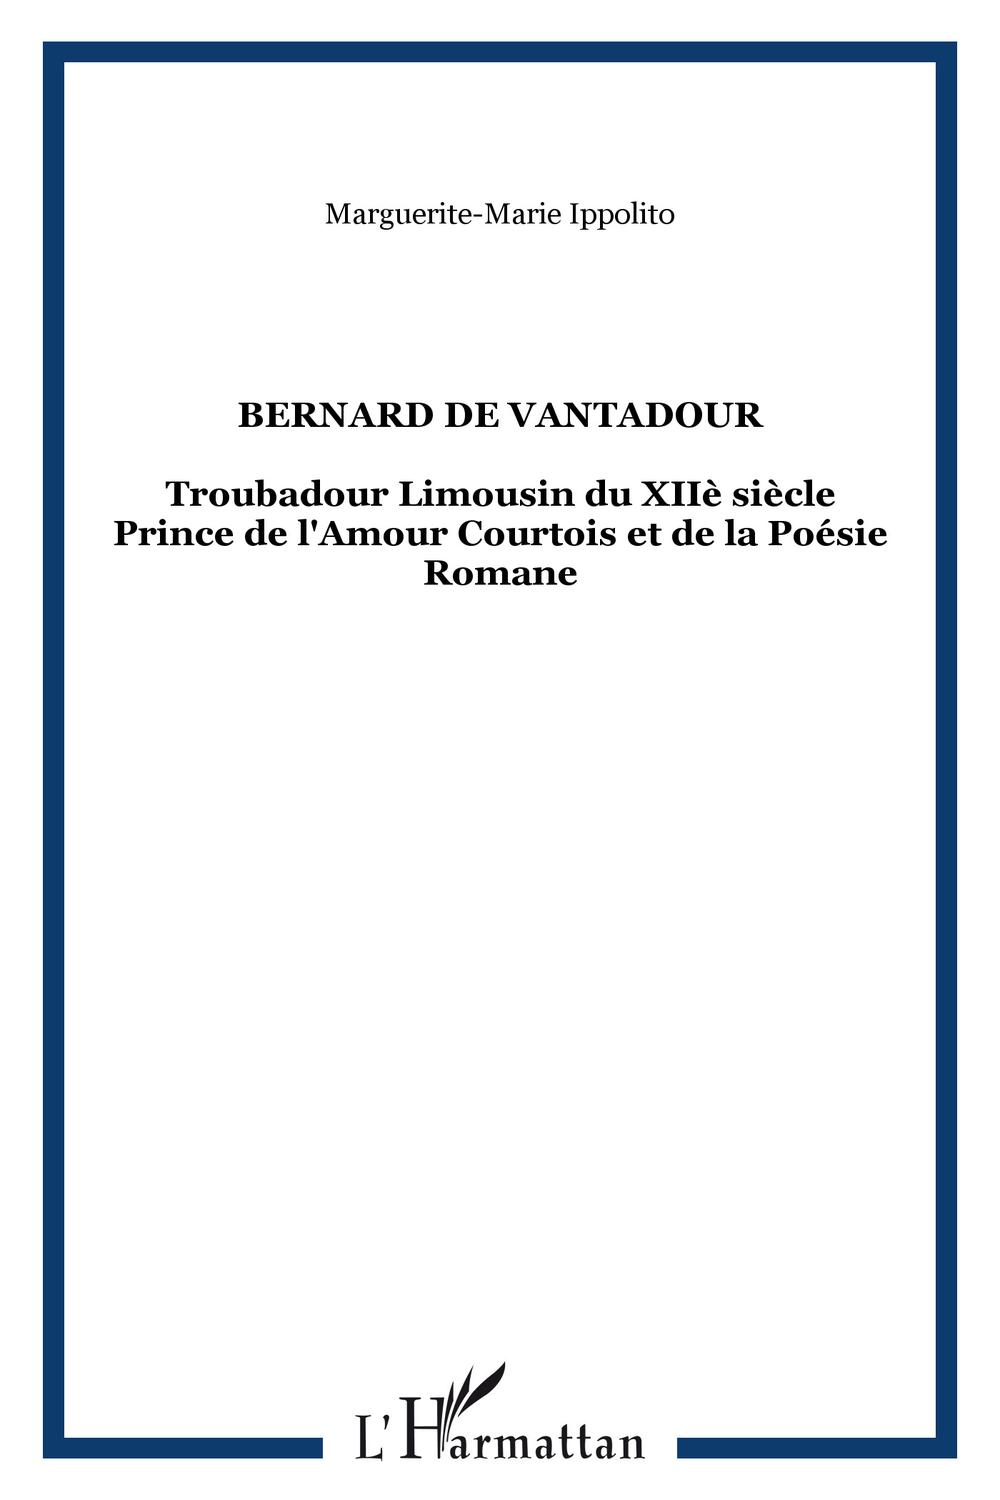 BERNARD DE VANTADOUR - Marguerite-Marie Ippolito